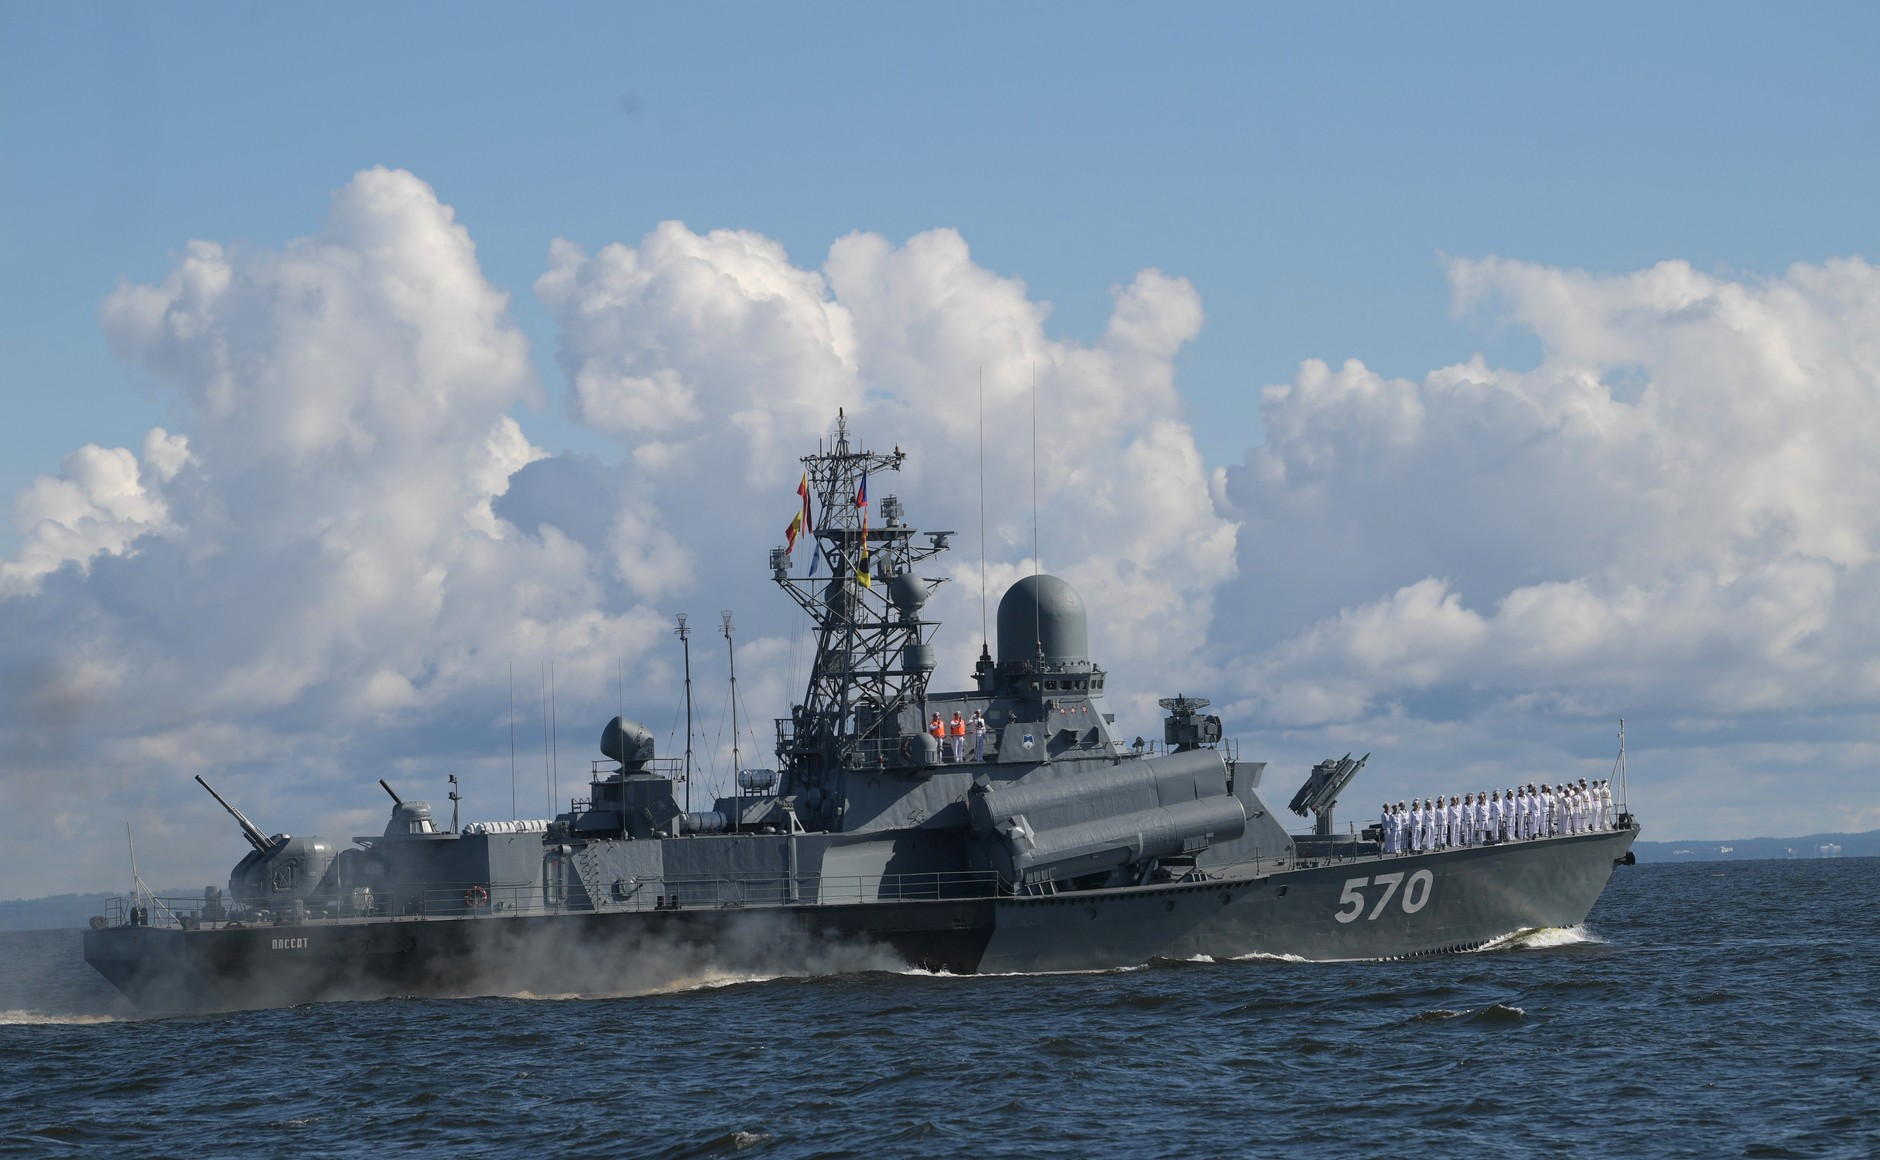 Ρωσικά πολεμικά πλοία στη Μαύρη θάλασσα για ασκήσεις και η Ουκρανία ετοιμάζει δικά της γυμνάσια